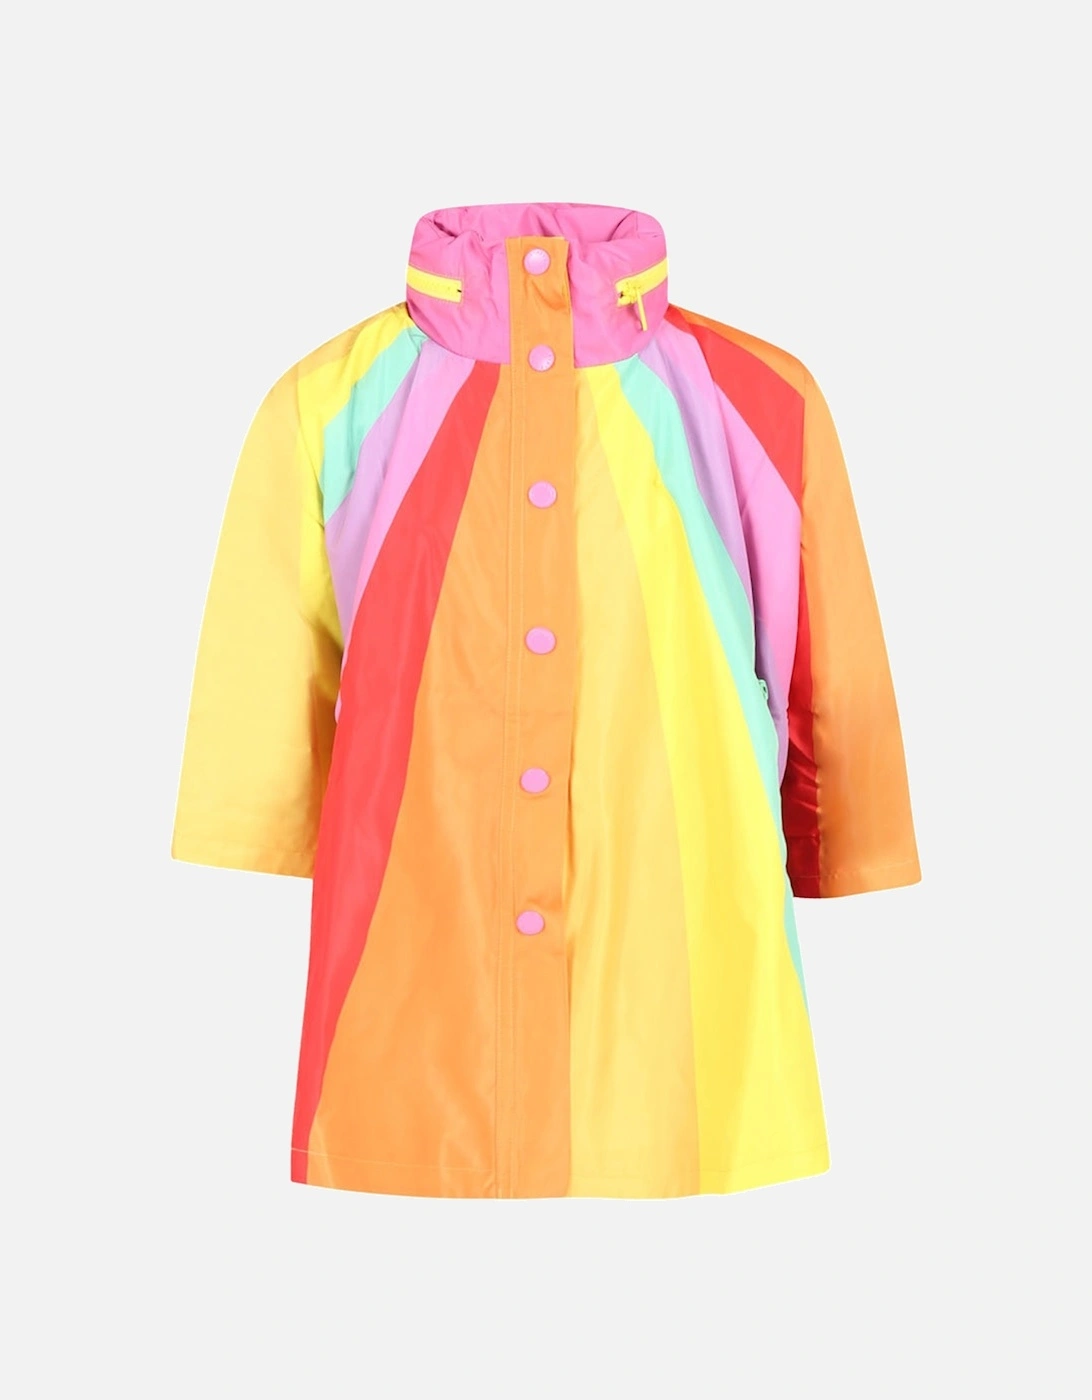 Unisex Rainbow Rain Jacket Multi Coloured, 2 of 1